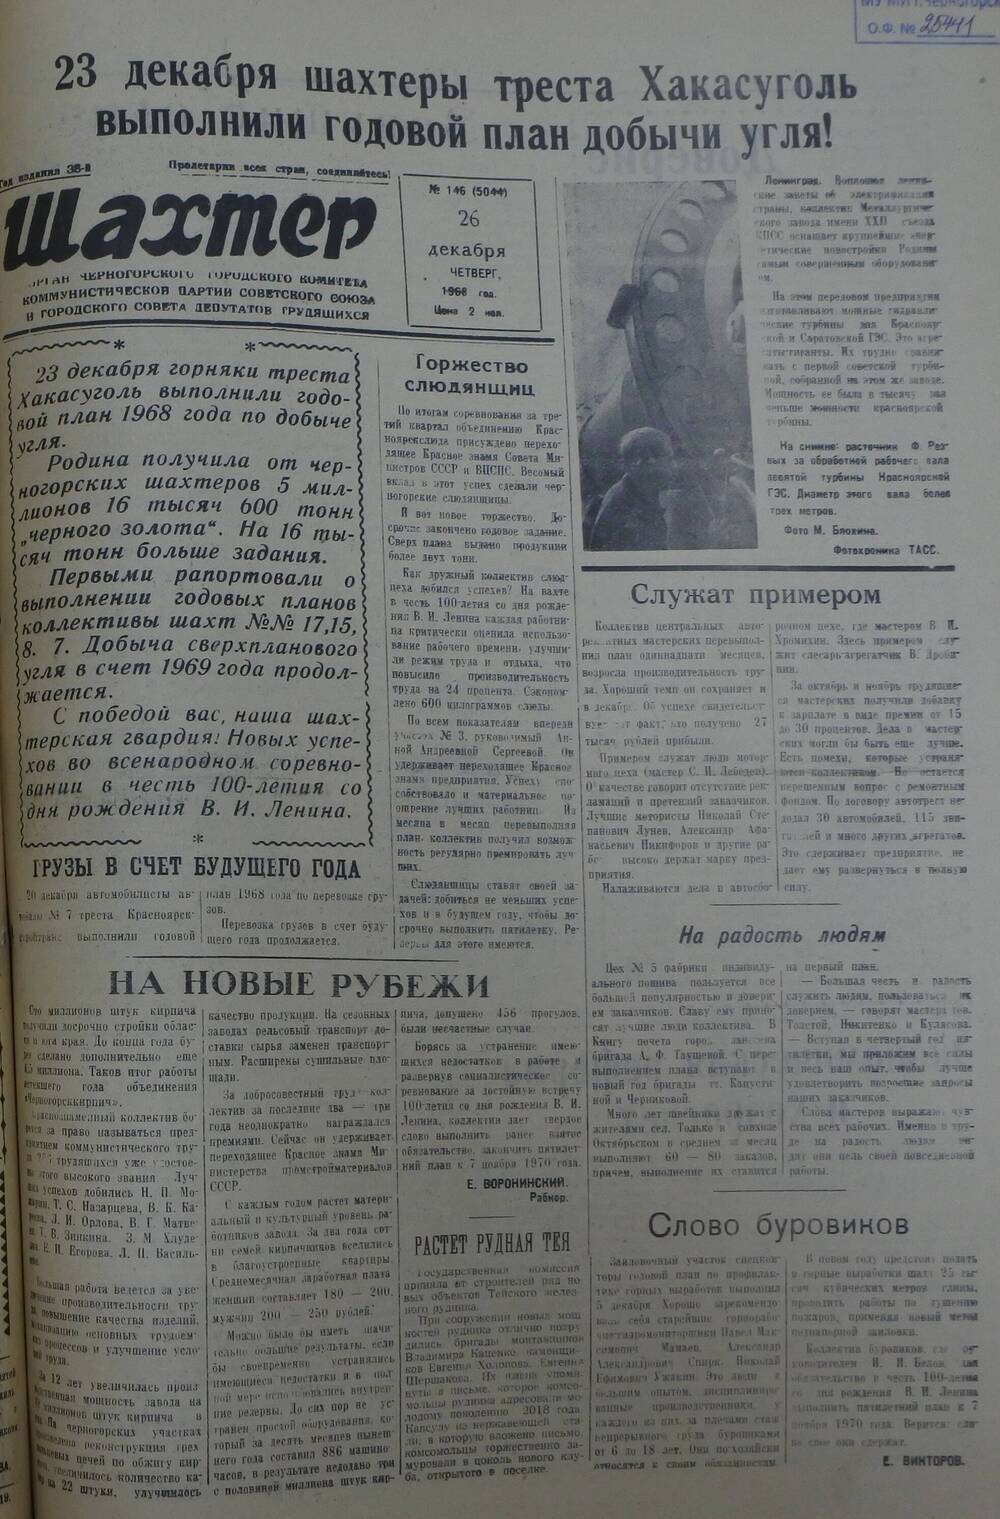 Газета «Шахтер». Выпуск № 146 от 26.12.1968 г.